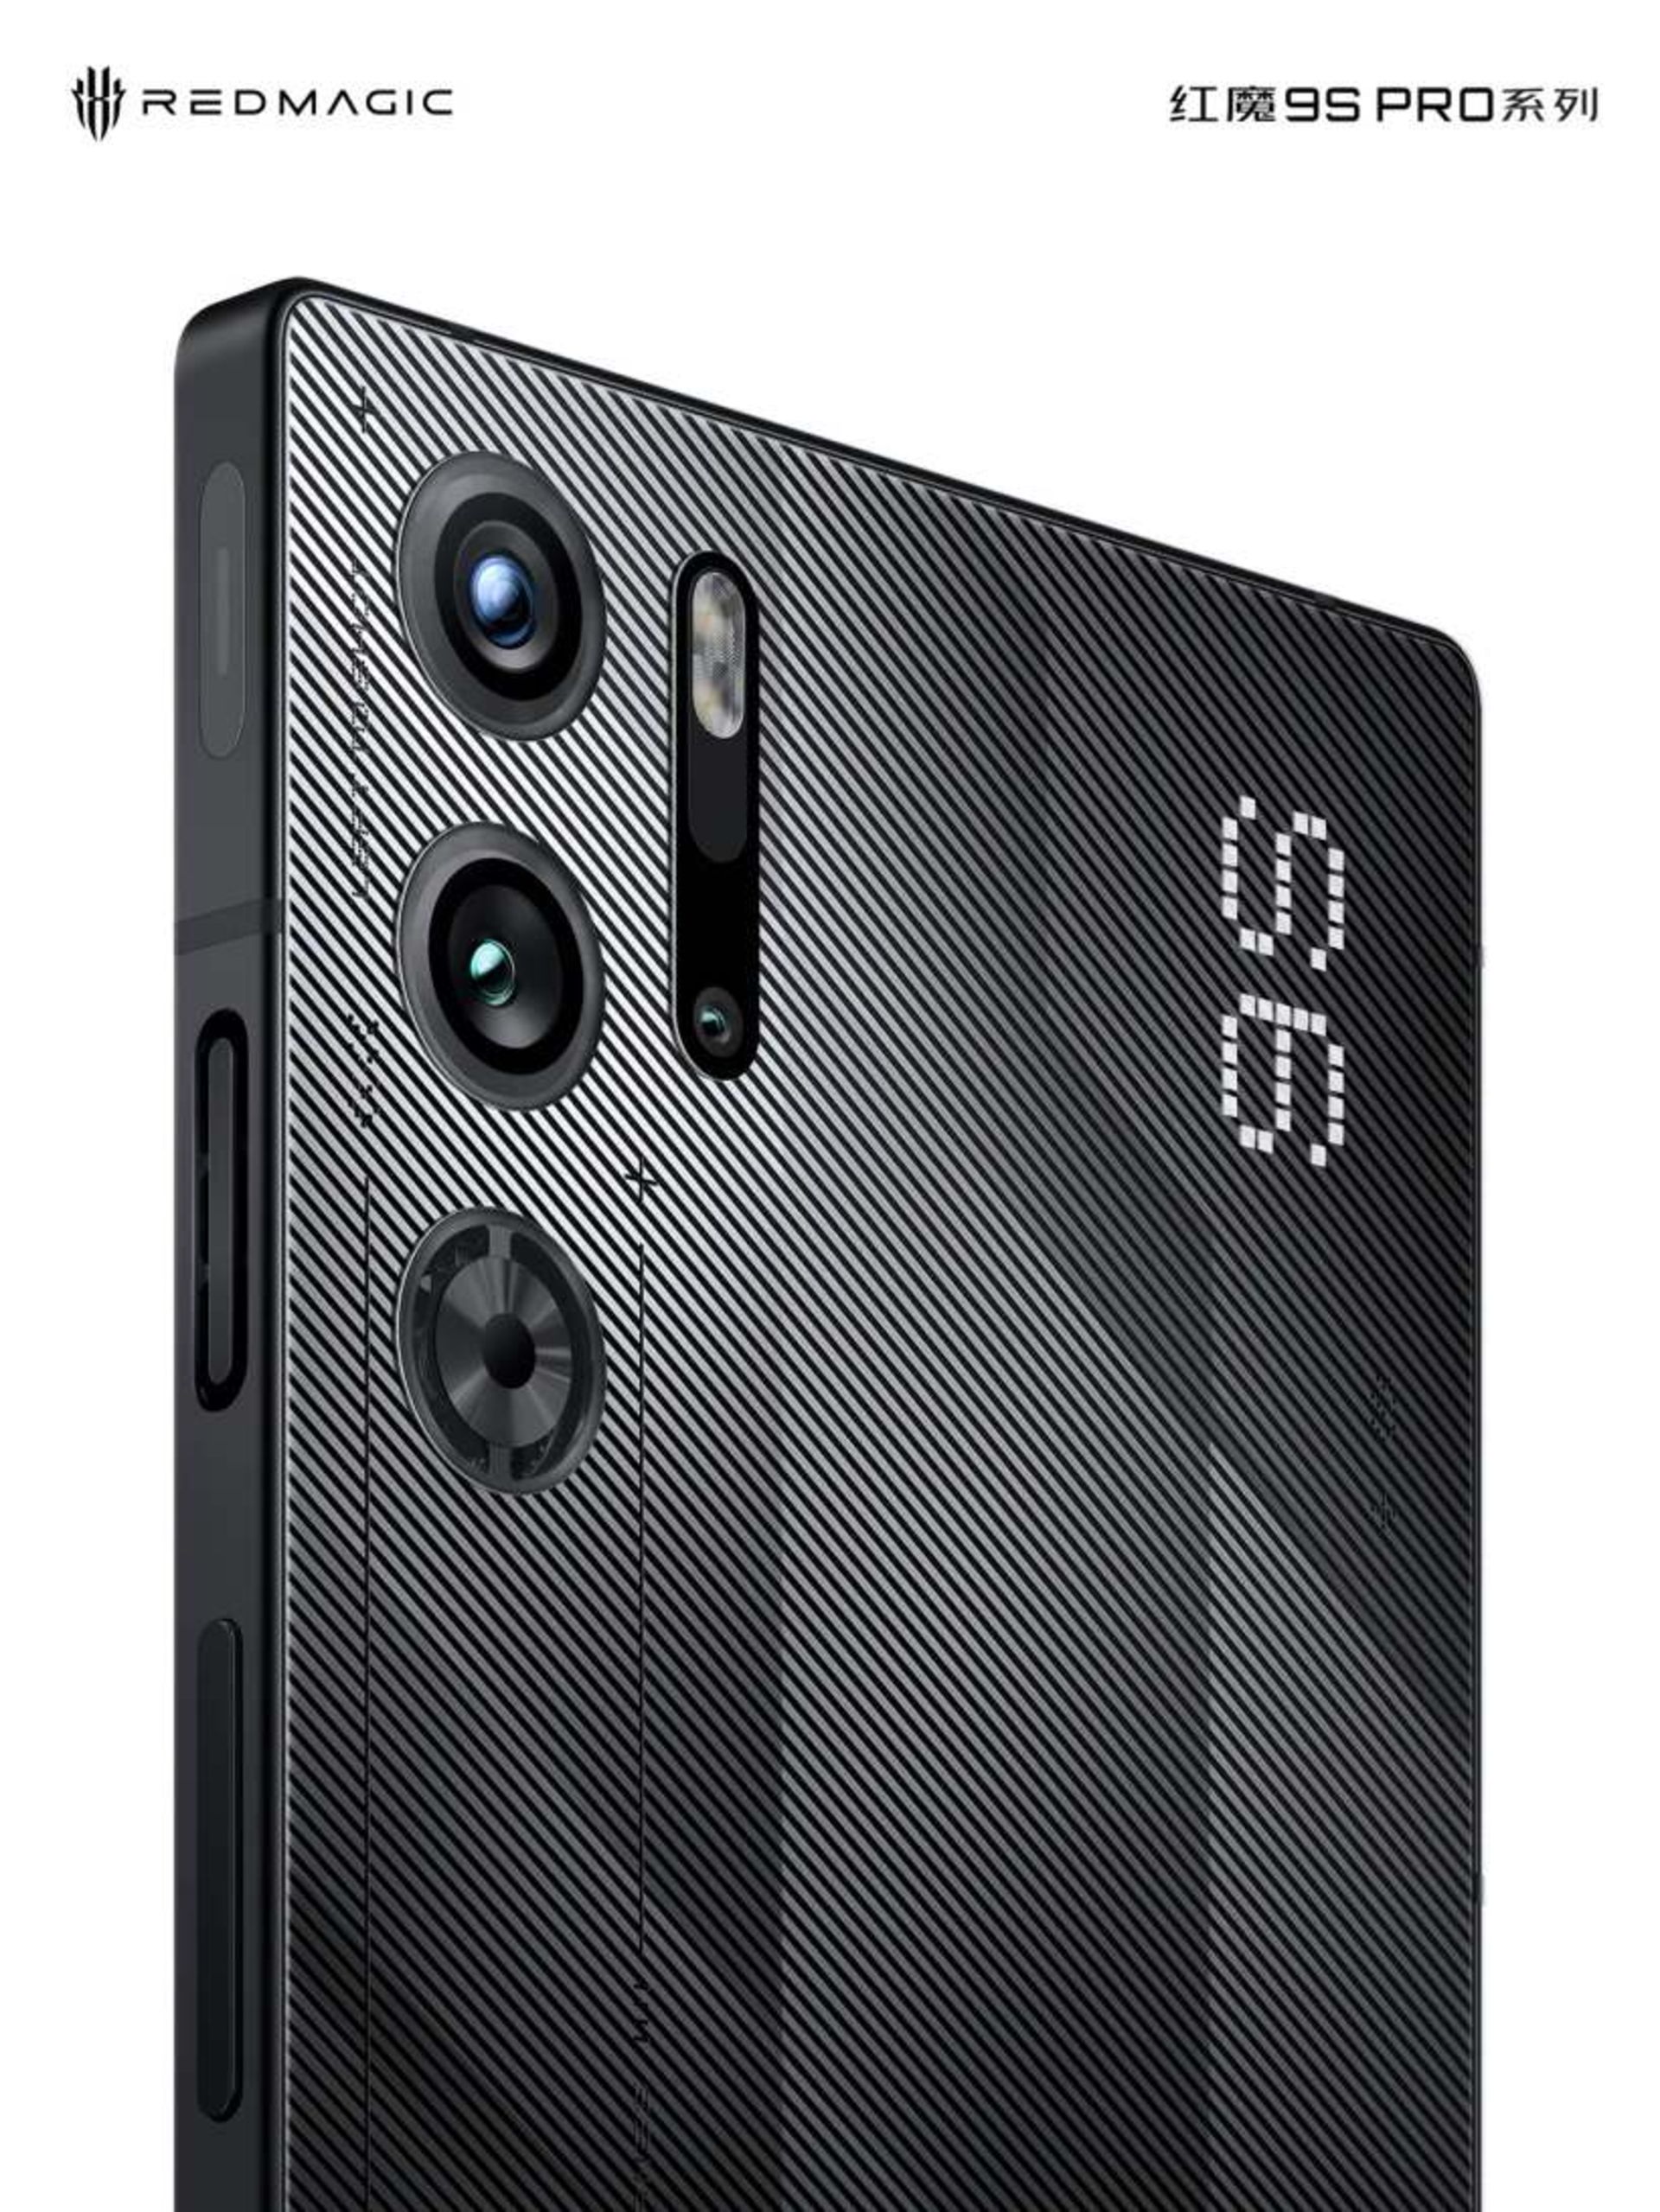  گوشی ردمجیک 9s Pro در رنگ سیاه غیرشفاف